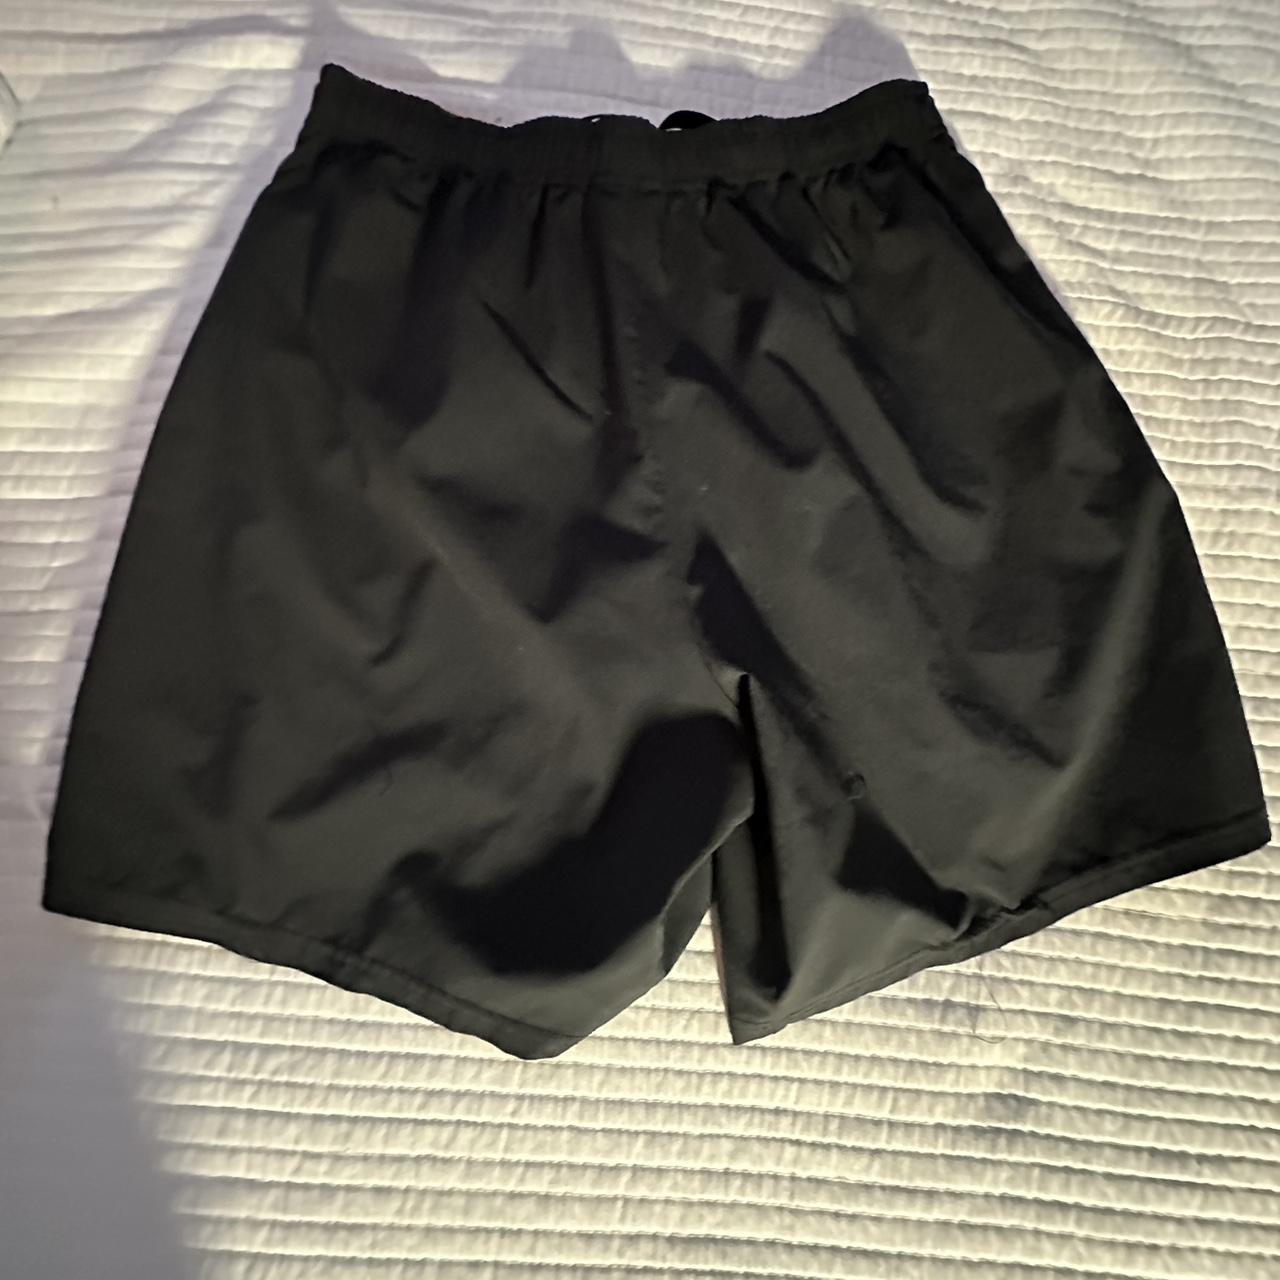 Black gym shark shorts - Depop